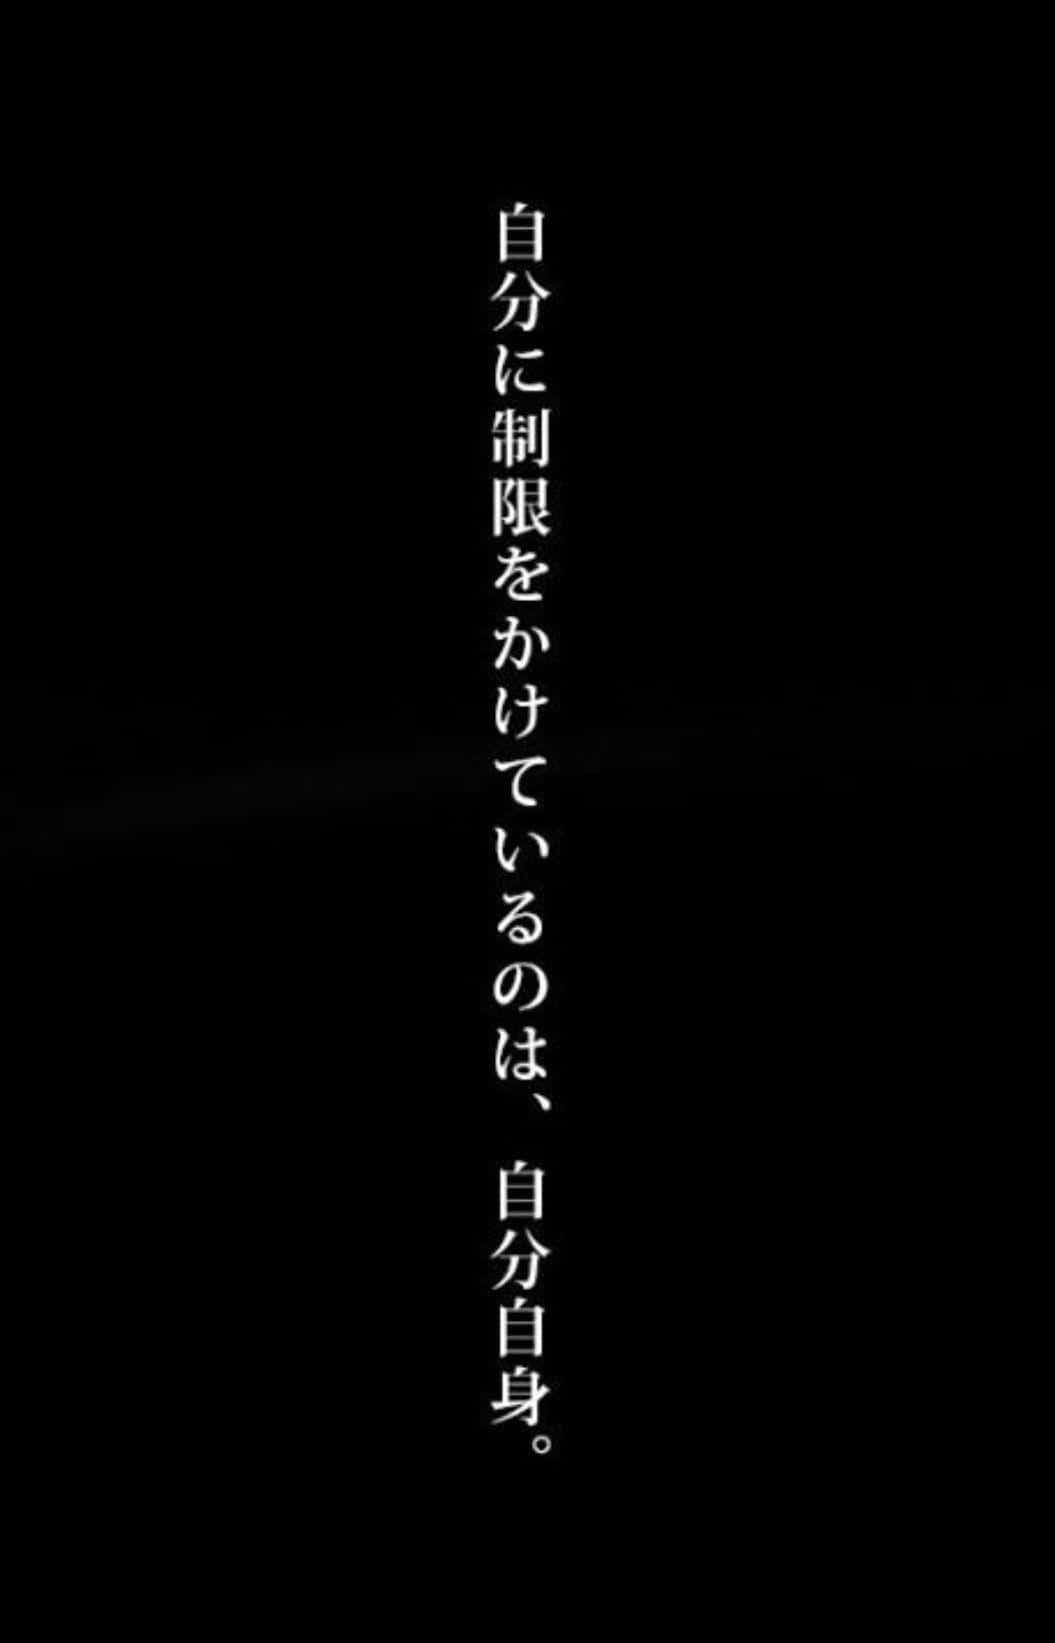 White Text Japanese Aesthetic Black Wallpaper